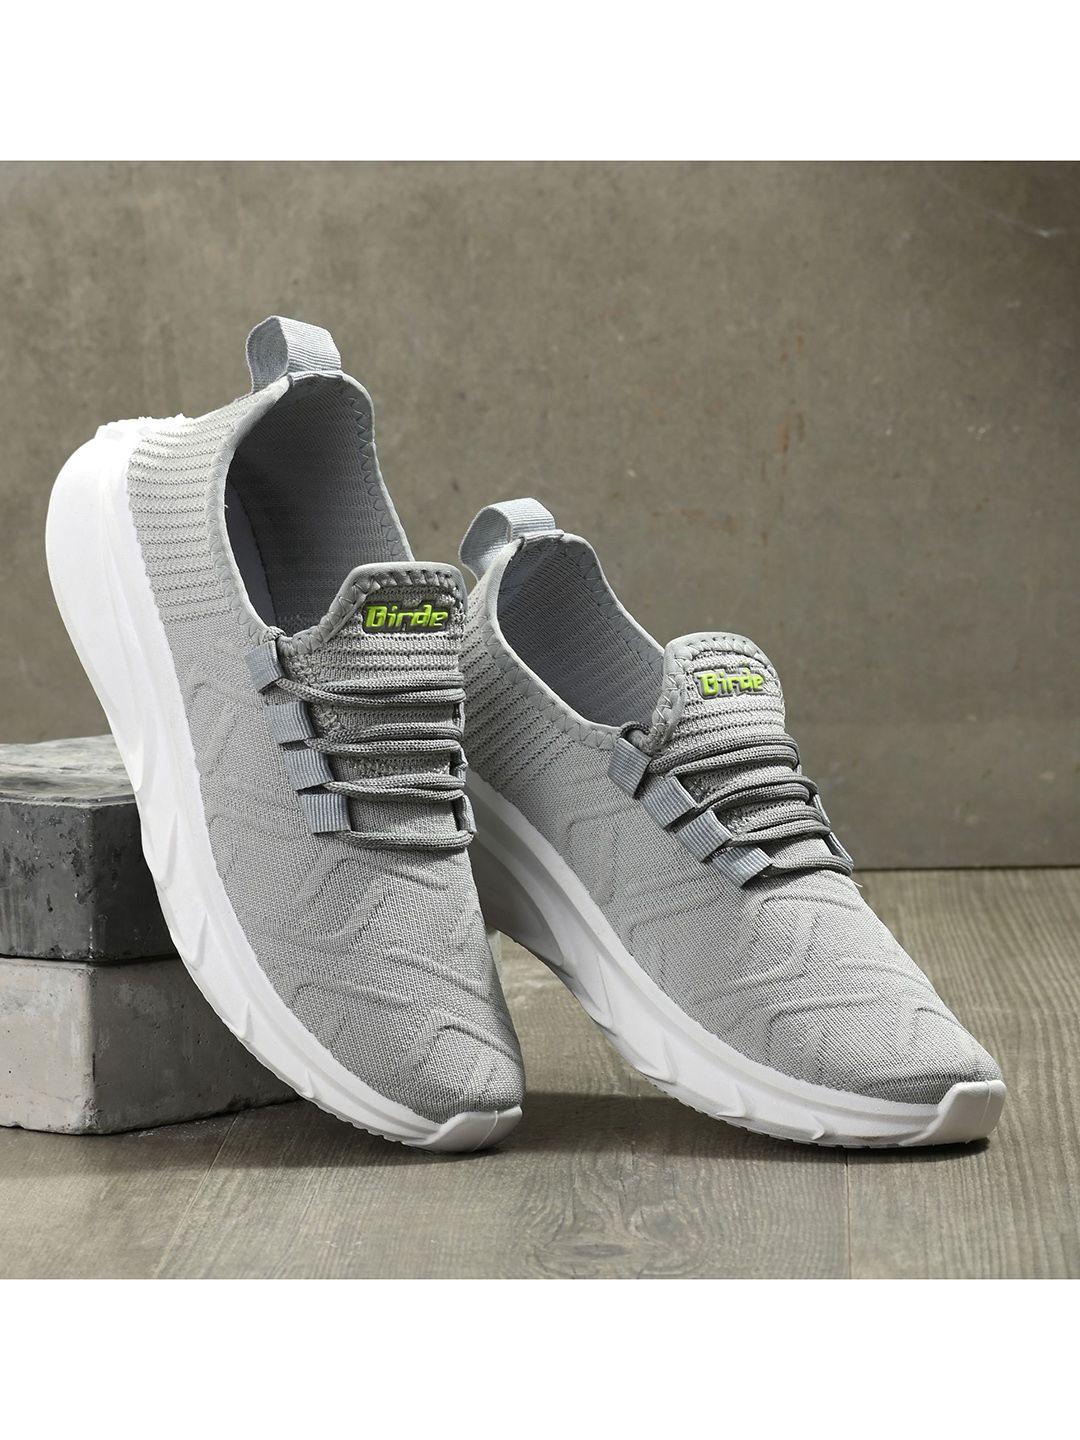 birde-men-grey-textured-sneakers